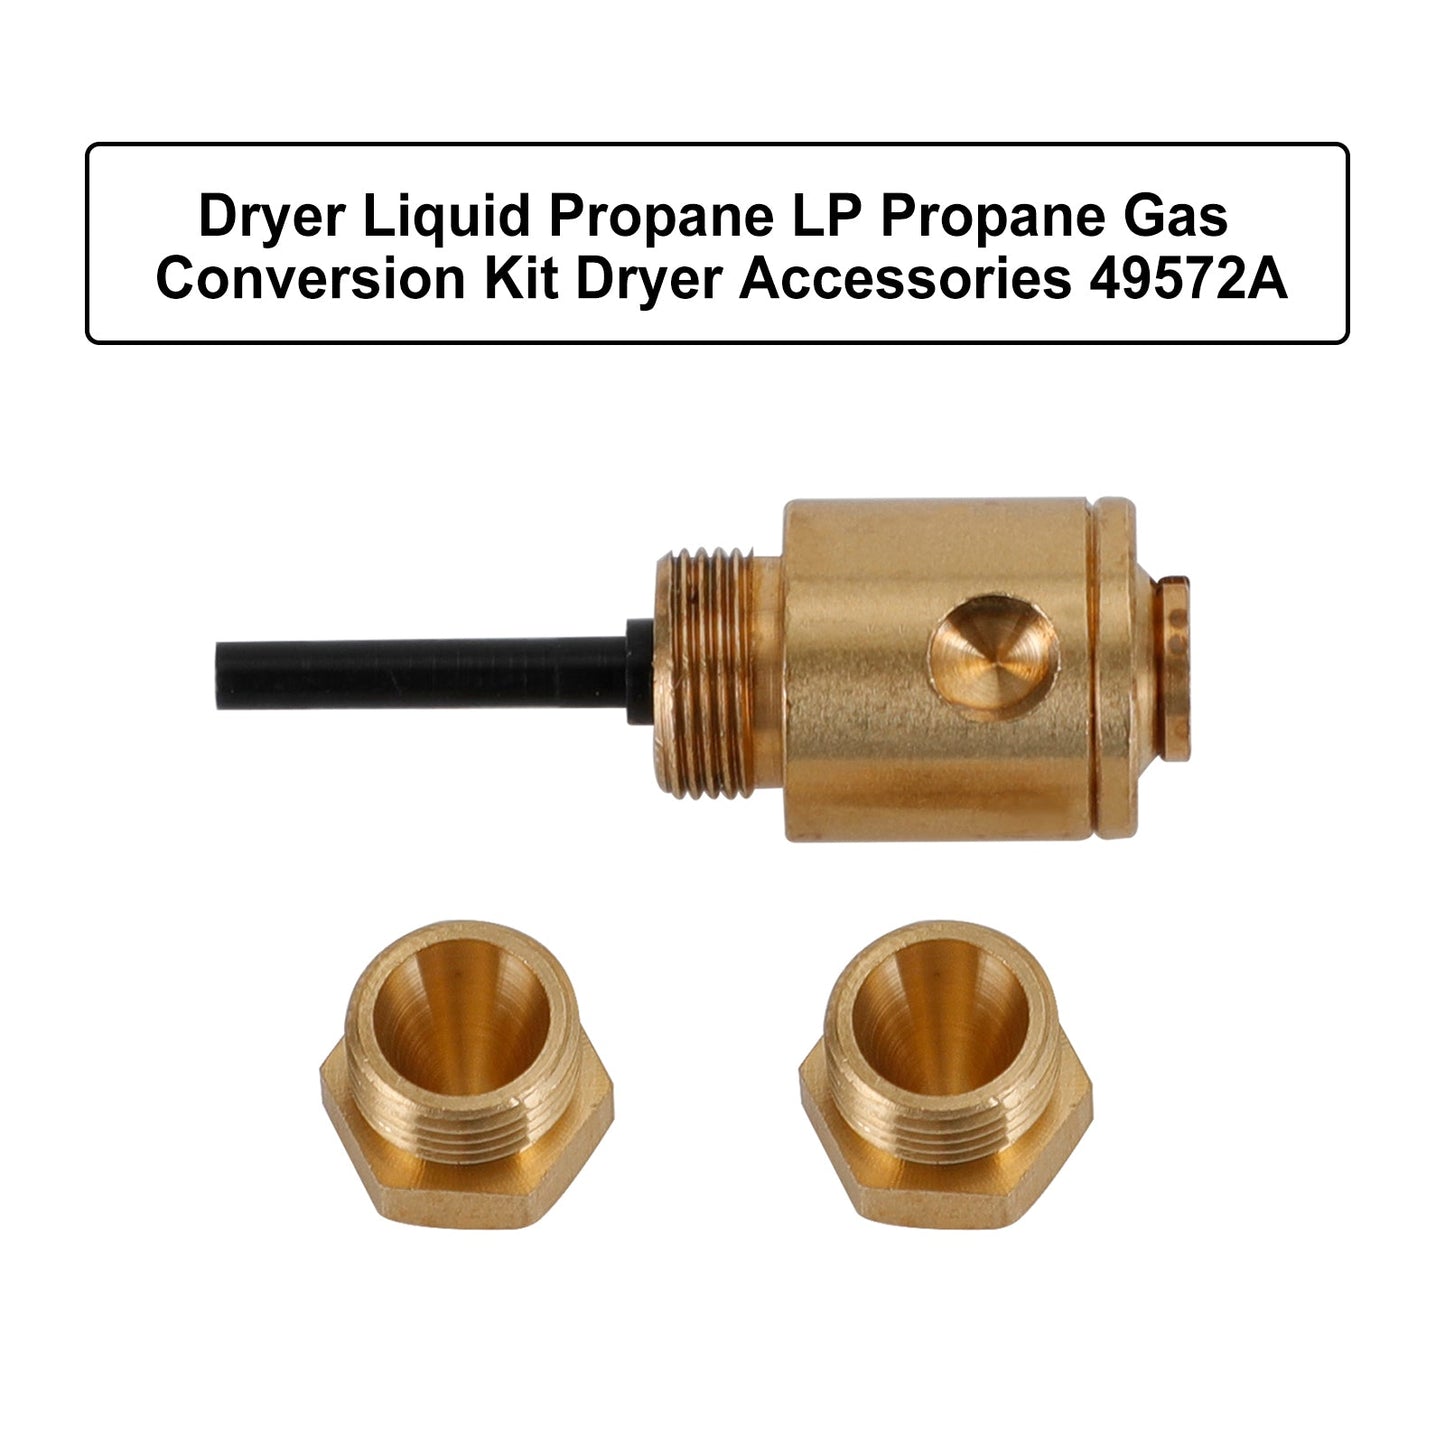 Sécheuse Liquide Propane LP Kit de conversion de gaz propane Accessoire de séchage 49572a